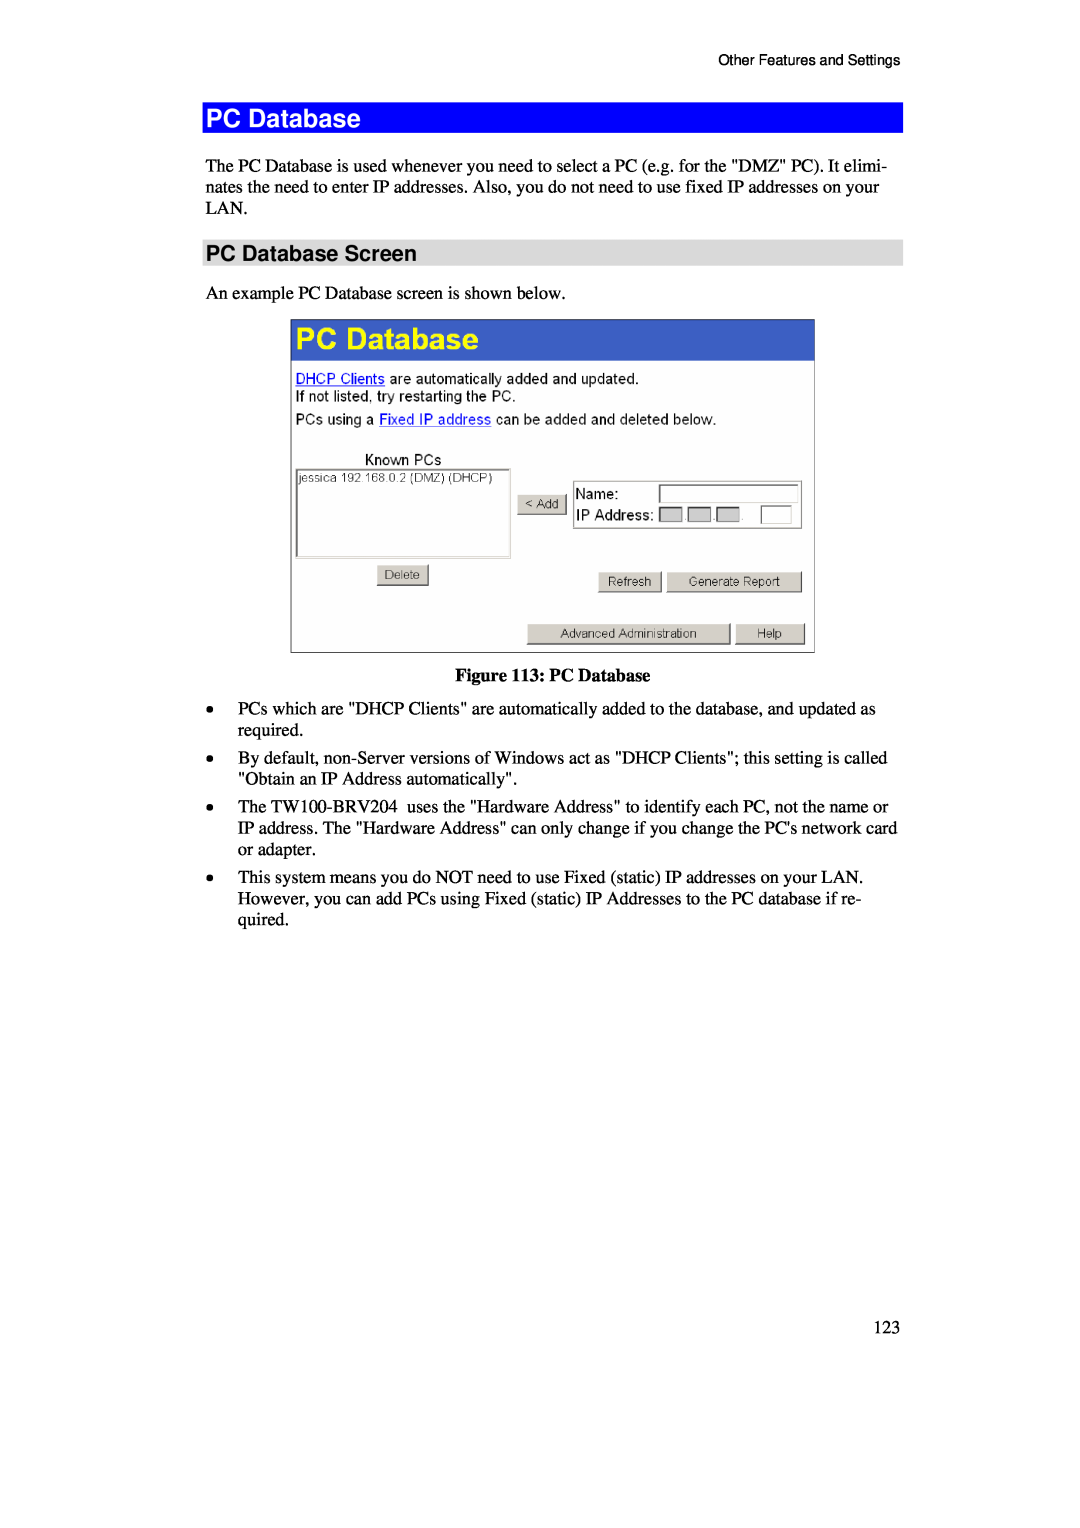 TRENDnet BRV204 manual PC Database Screen 